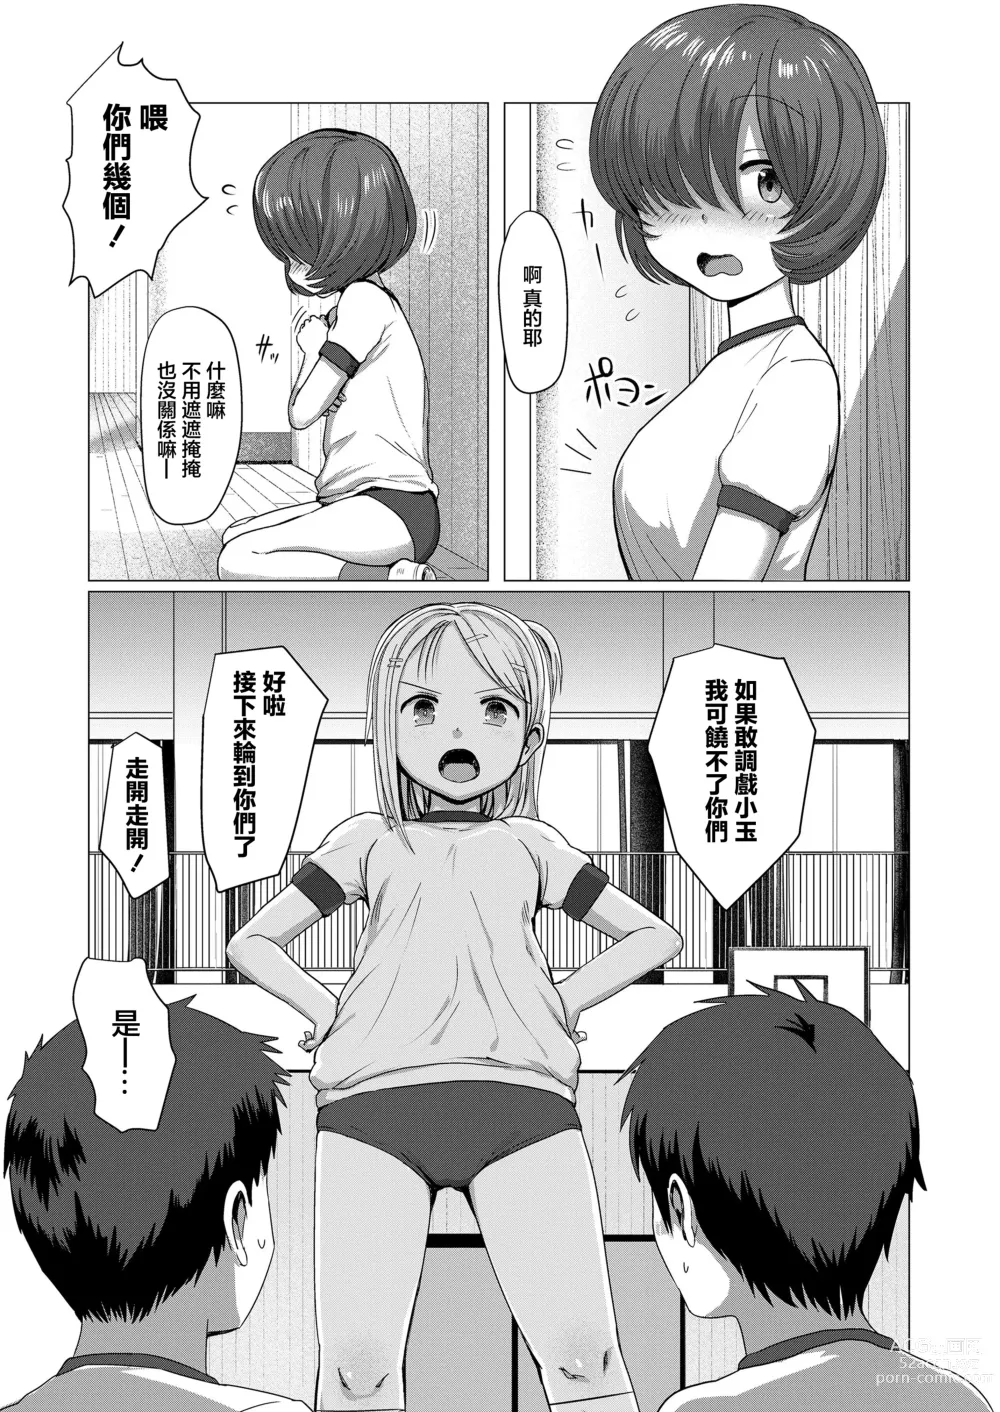 Page 3 of manga Kakushikirenai